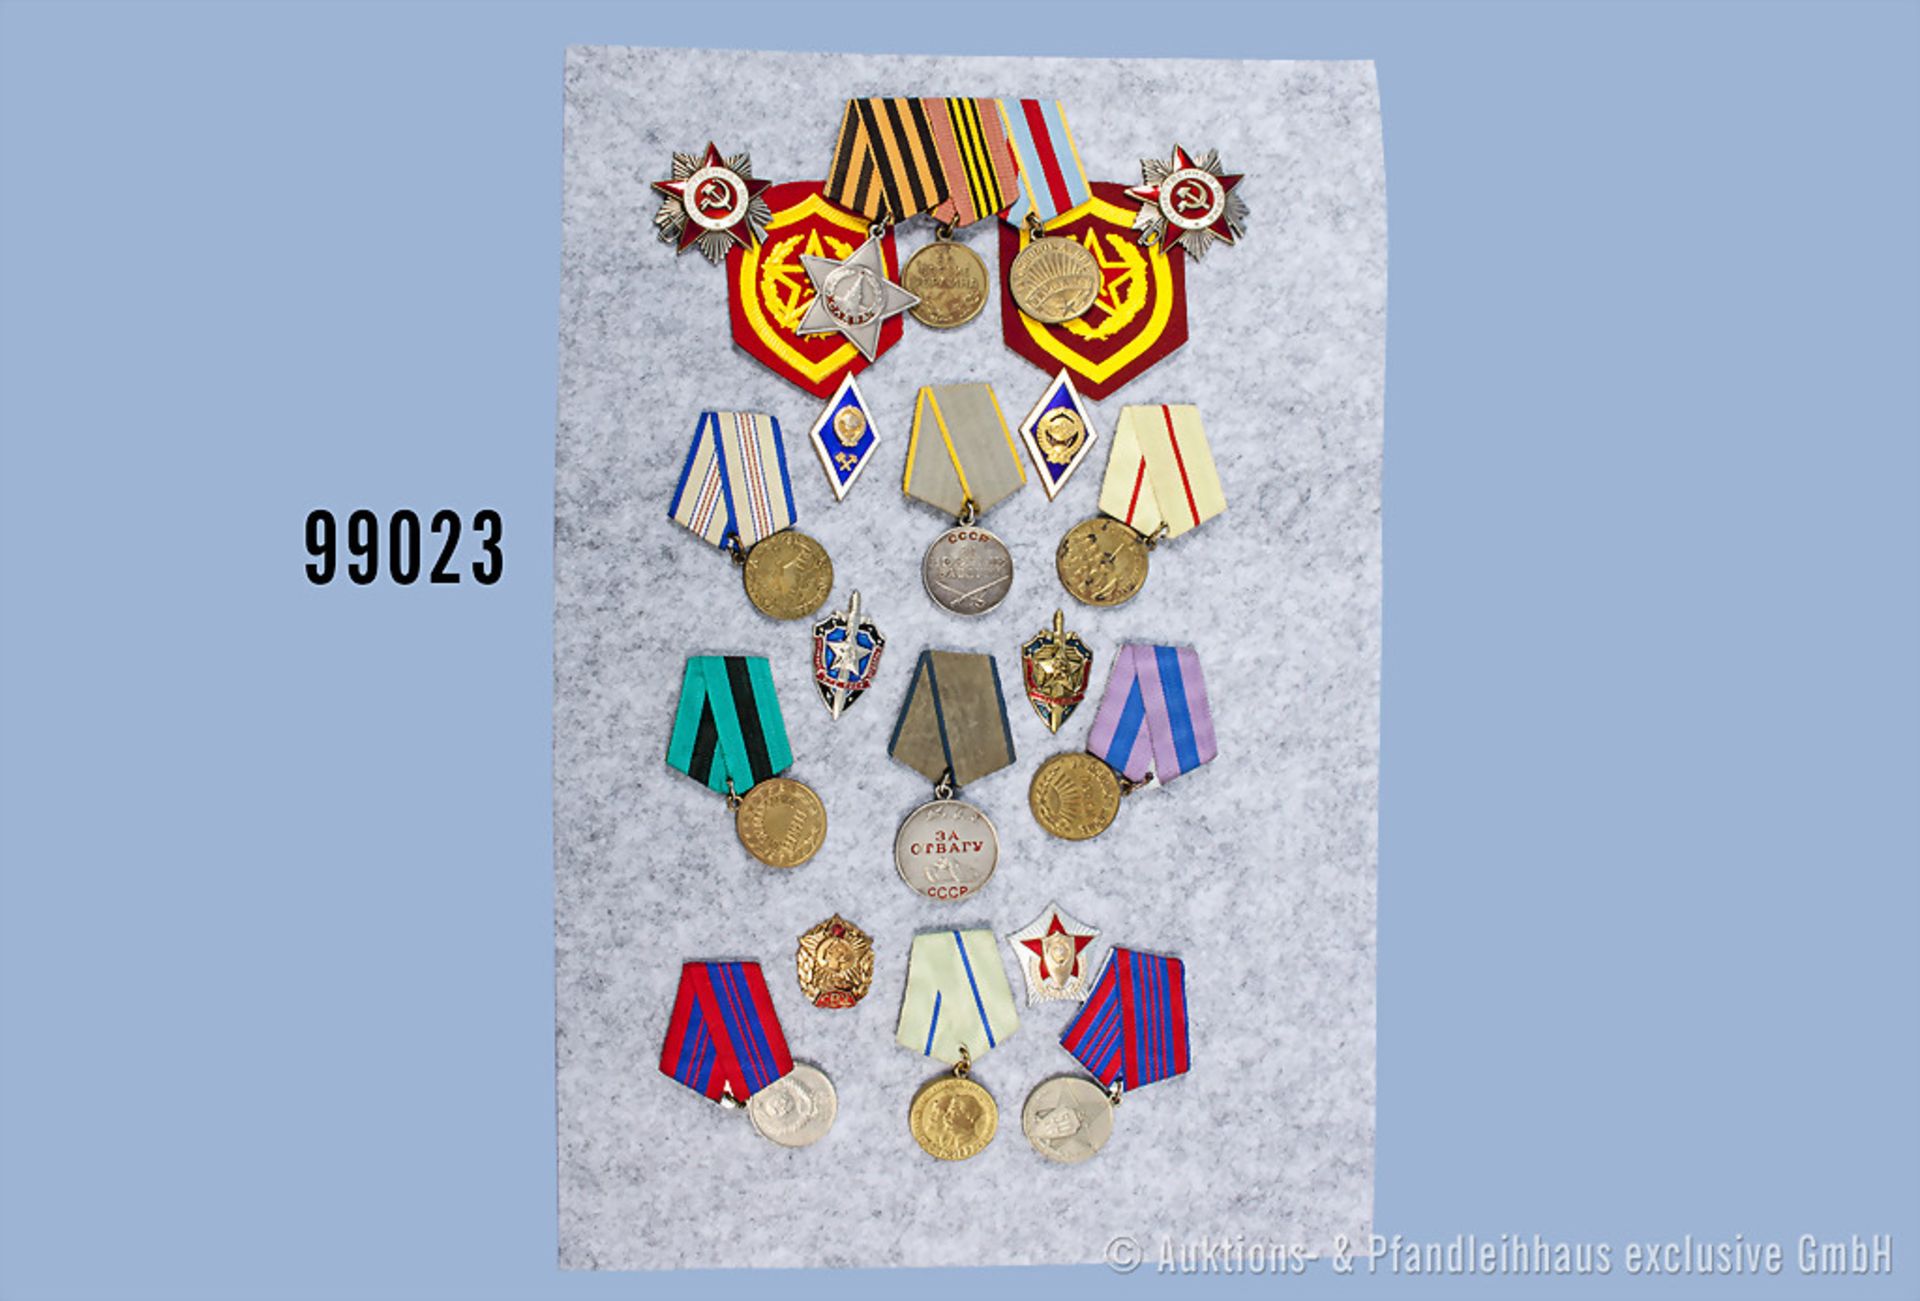 Konv. UdSSR, 14 Feldzugsmedaillen und 6 Akademie-Abzeichen, guter Zustand, teilweise mit